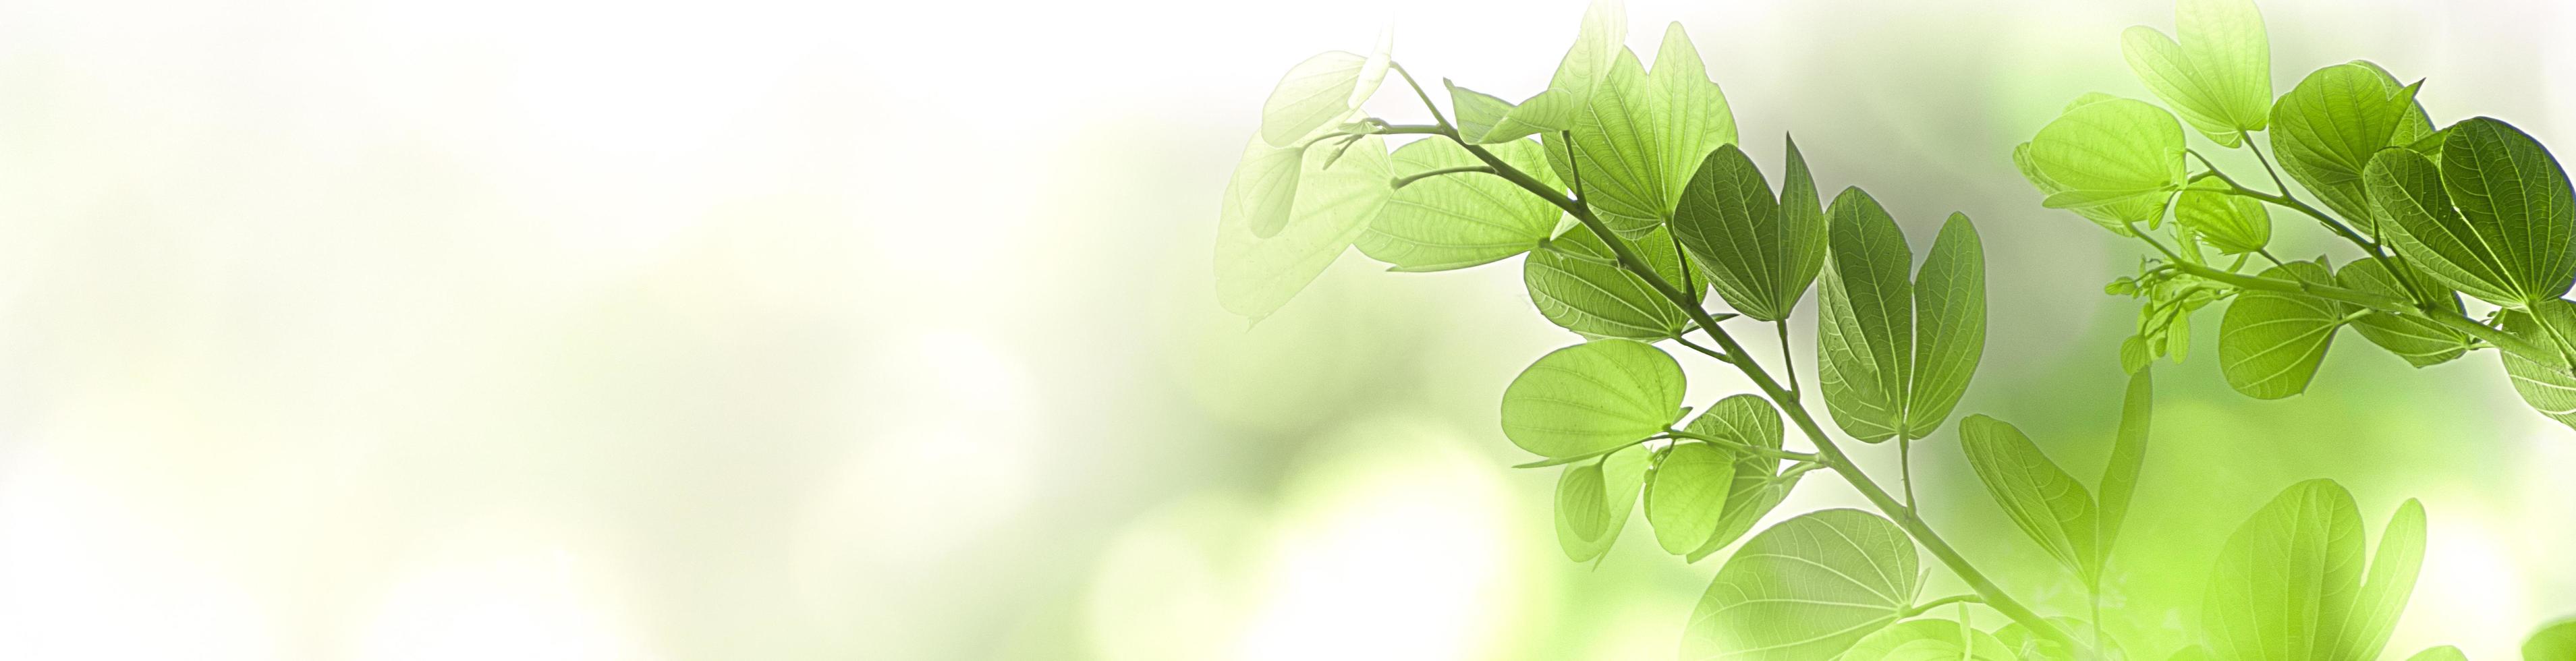 natuur groene boom vers blad op mooie wazig zachte bokeh zonlicht achtergrond met gratis kopie ruimte, lente zomer of milieu voorblad, sjabloon, webbanner en koptekst. foto